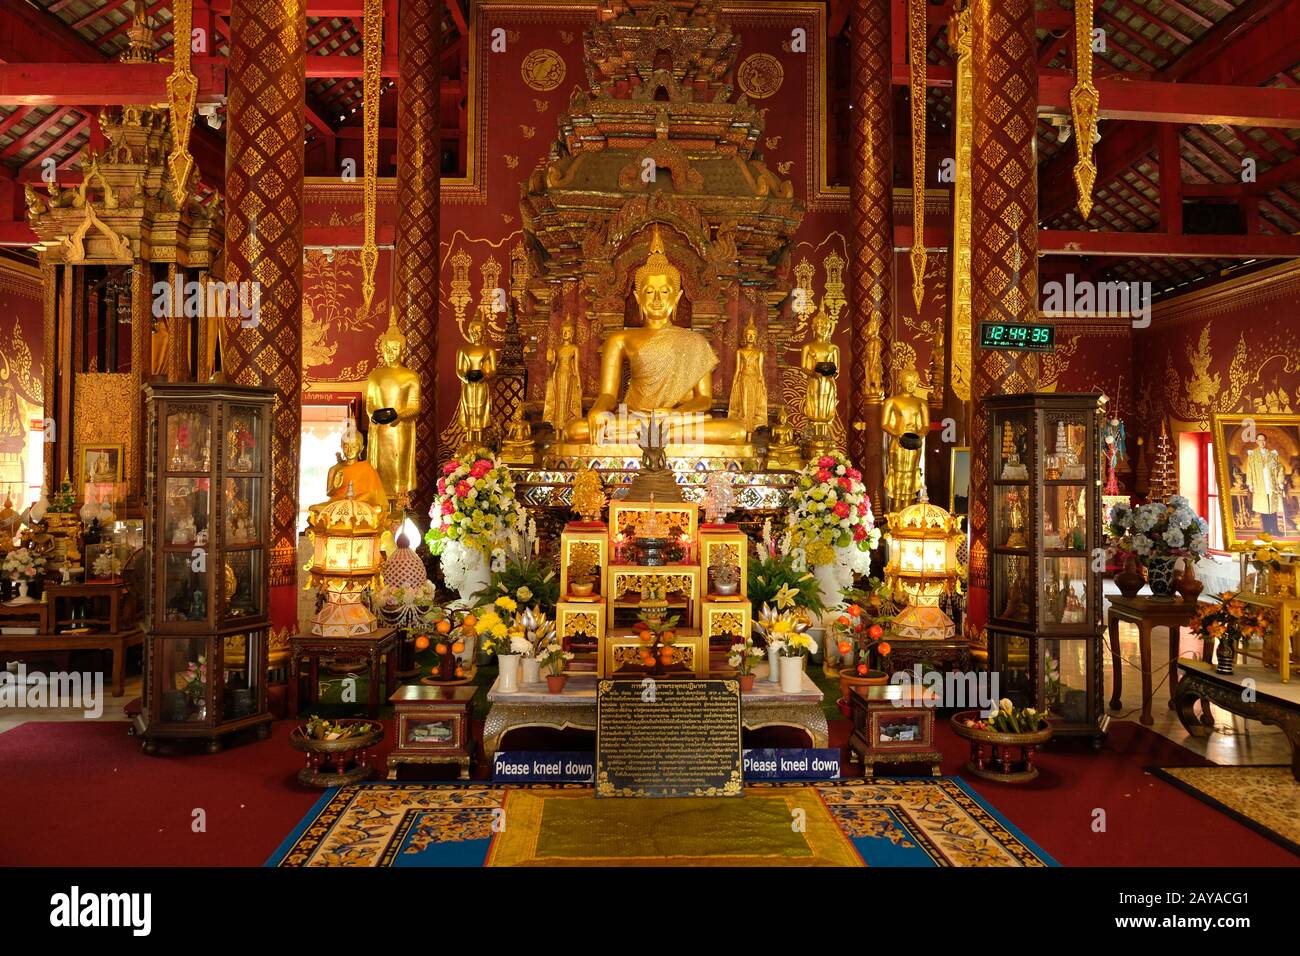 Chiang mai Thailandia - Tempio Chiang Man sala meditazione principale con statua del Buddha dorato Foto Stock